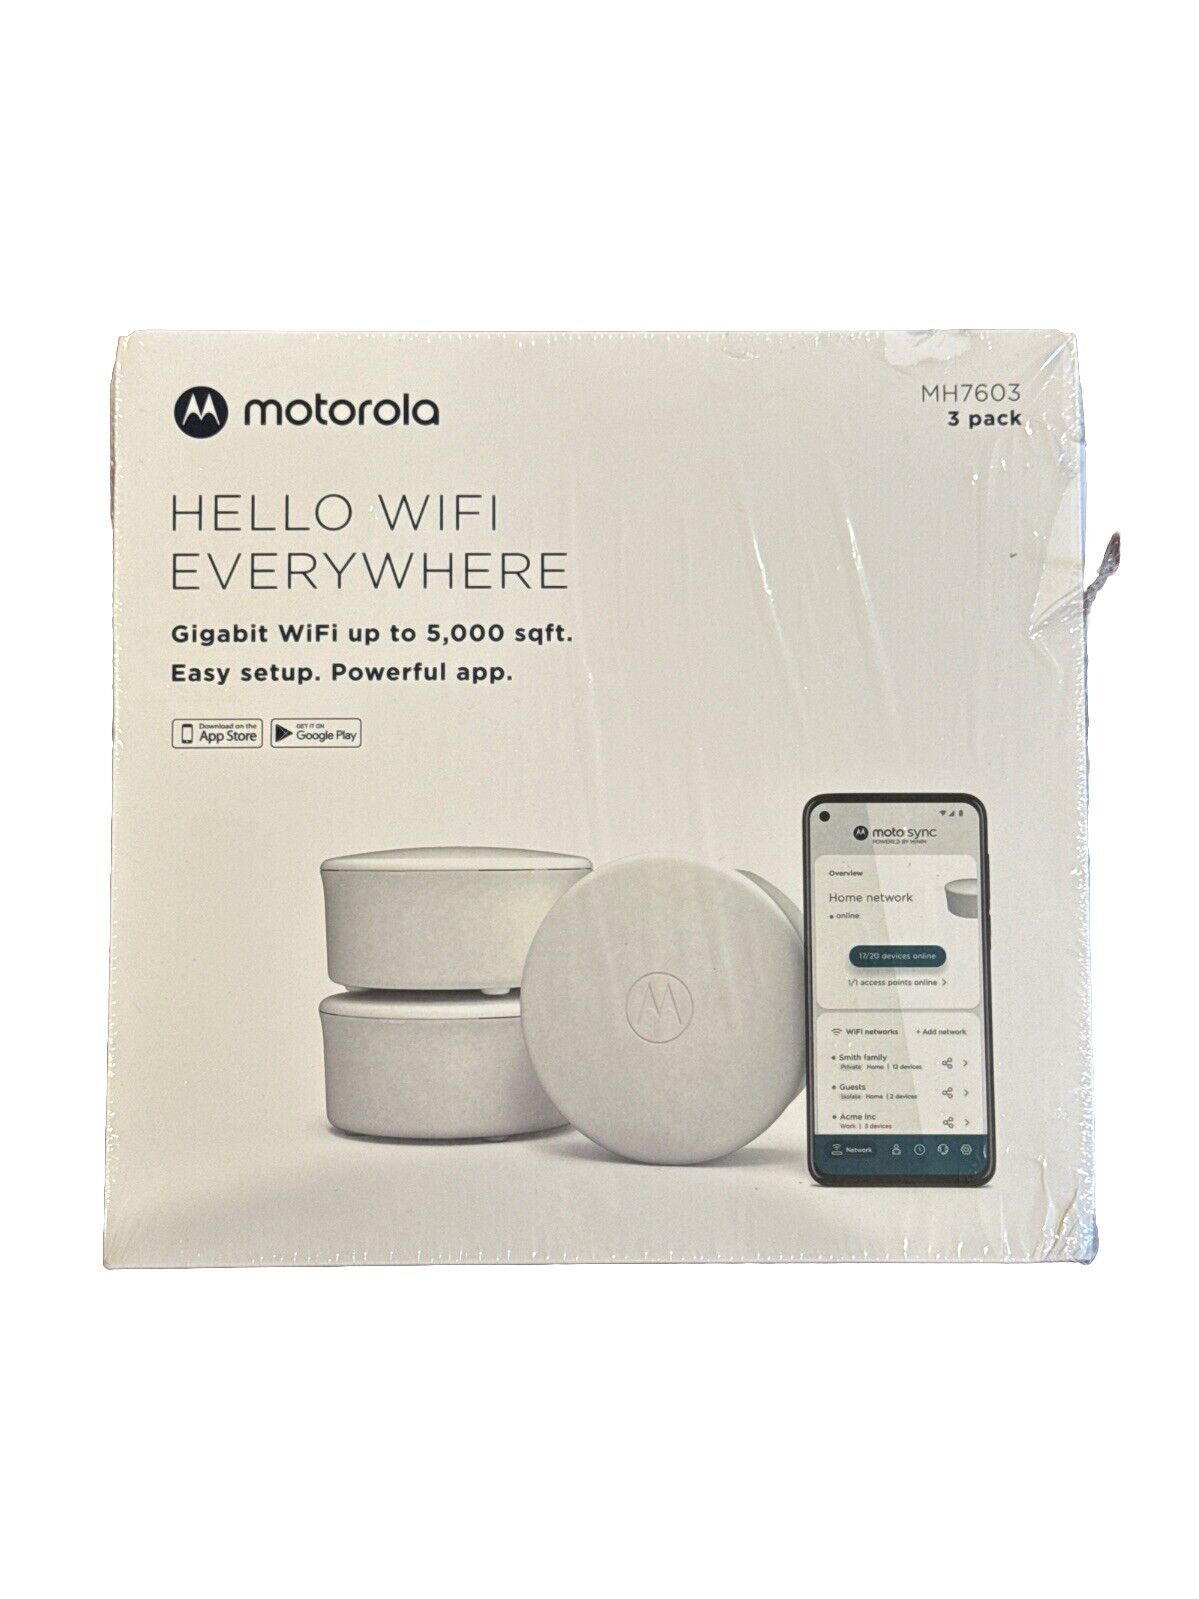 Motorola - Mesh 6 Router/Extender - MH7603  - Gigabit WiFi Covers 5000 sqft